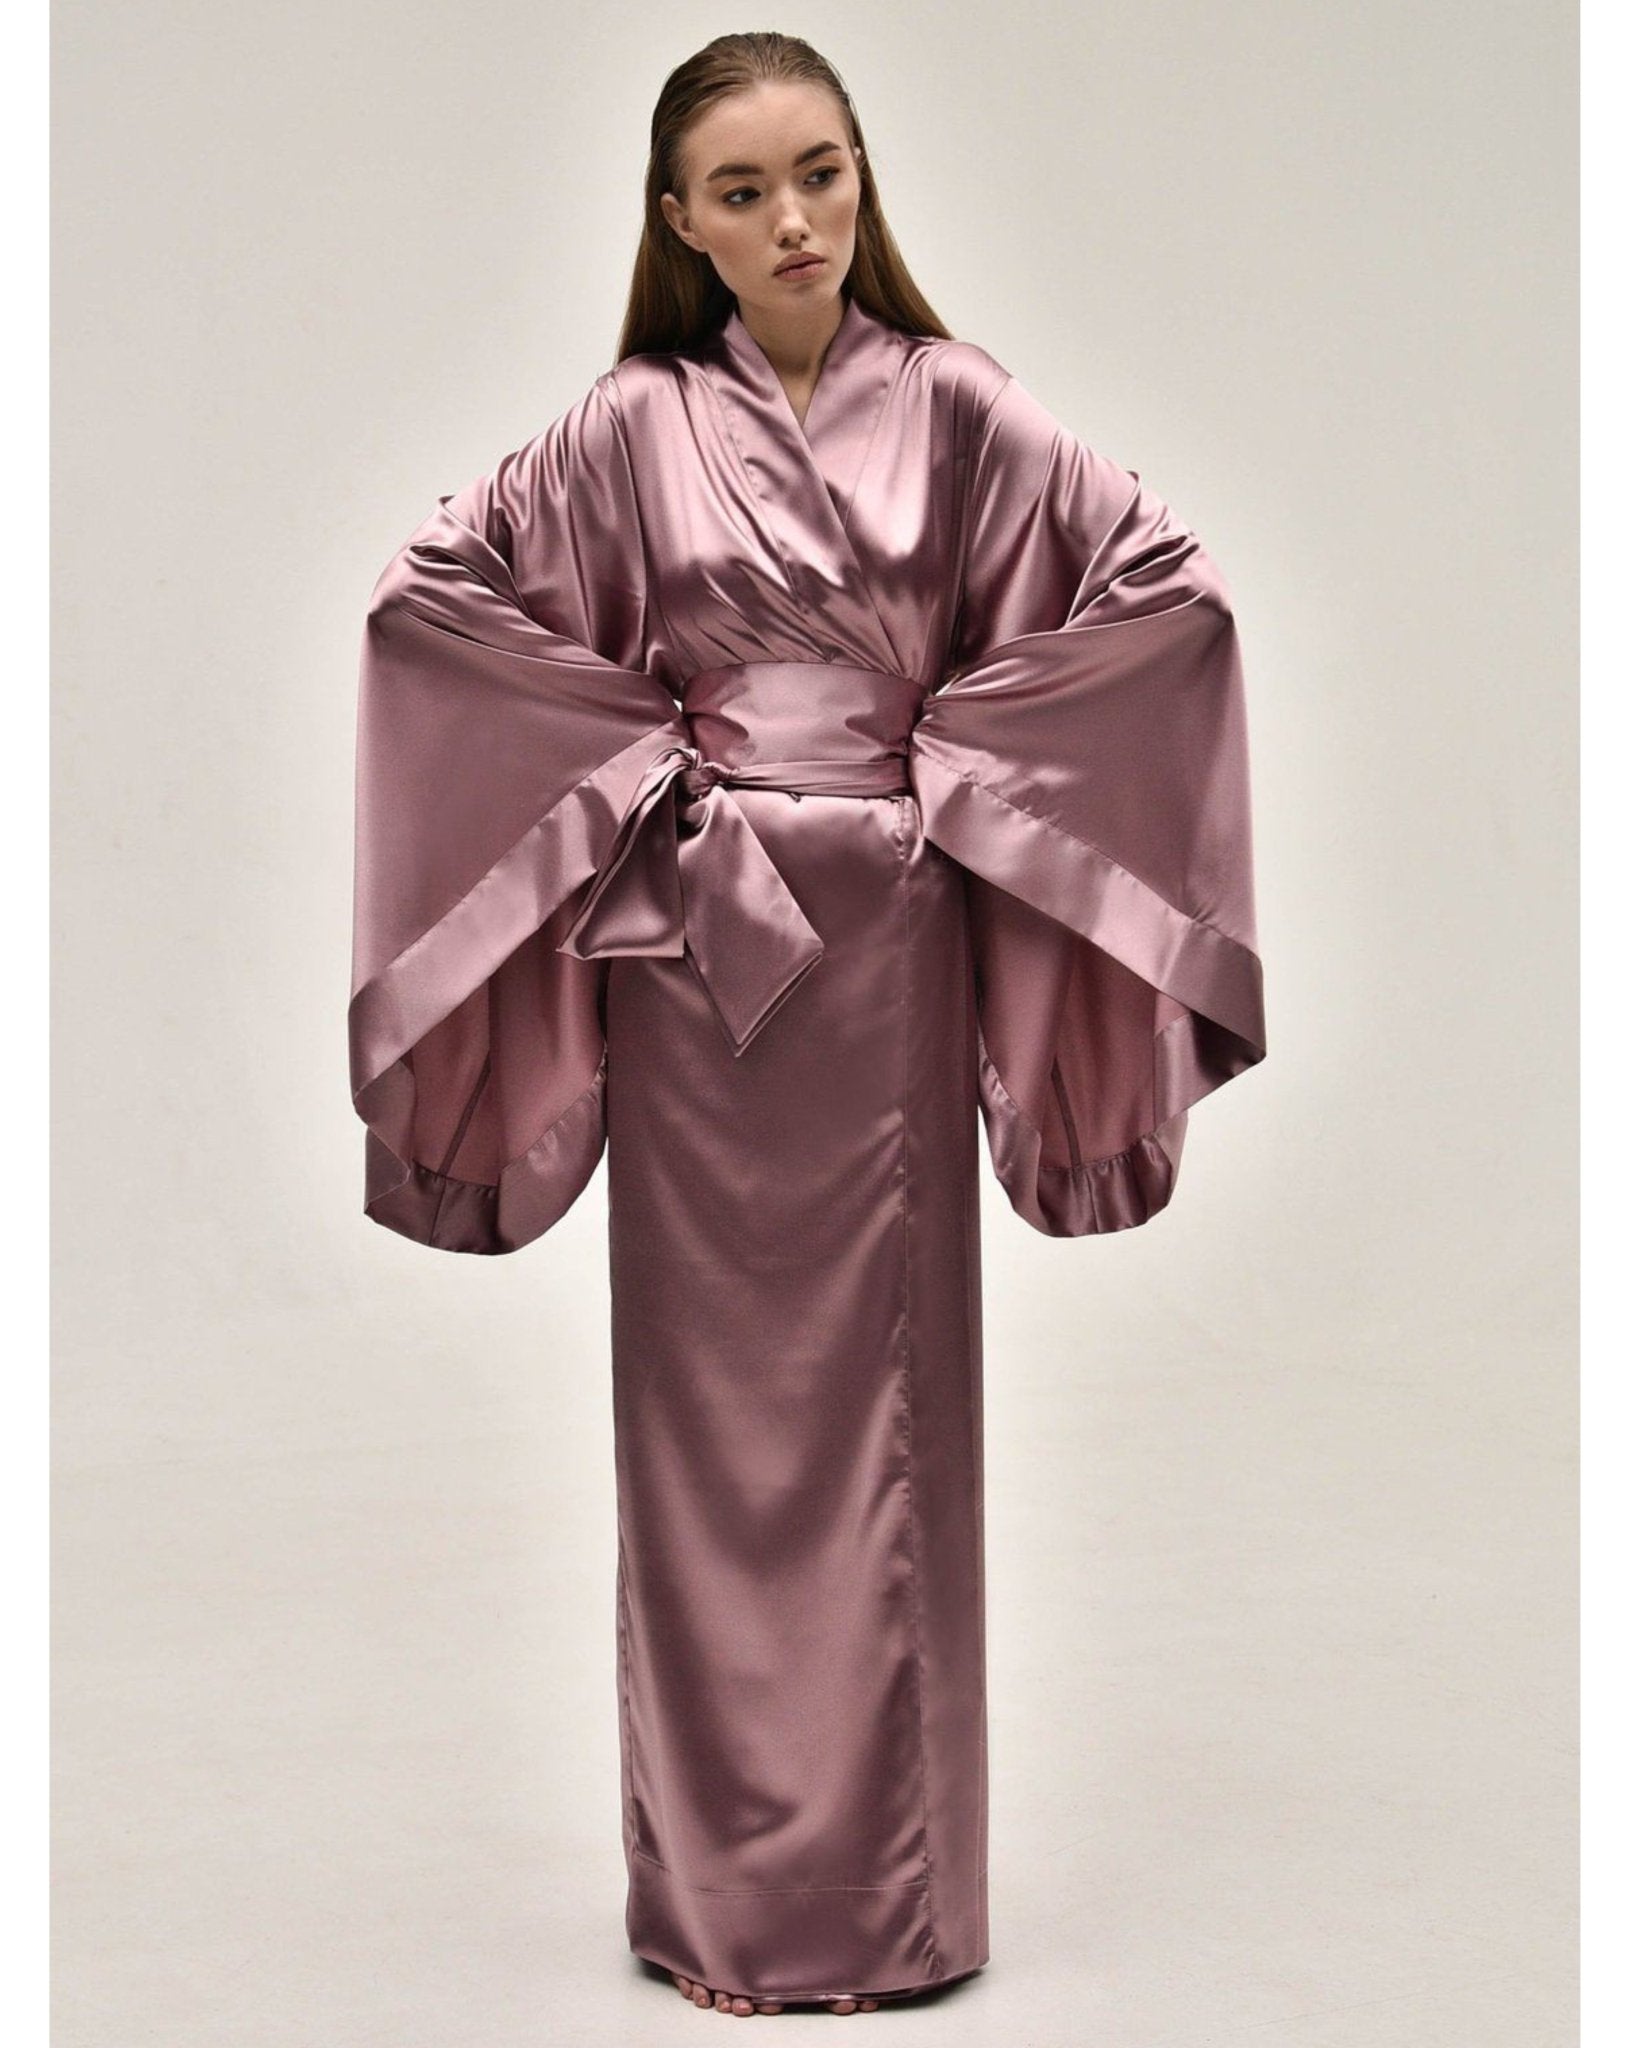 Satin Kimono Kimono Robe|Luxury Long KÂfemme – Robe|Silk Robes